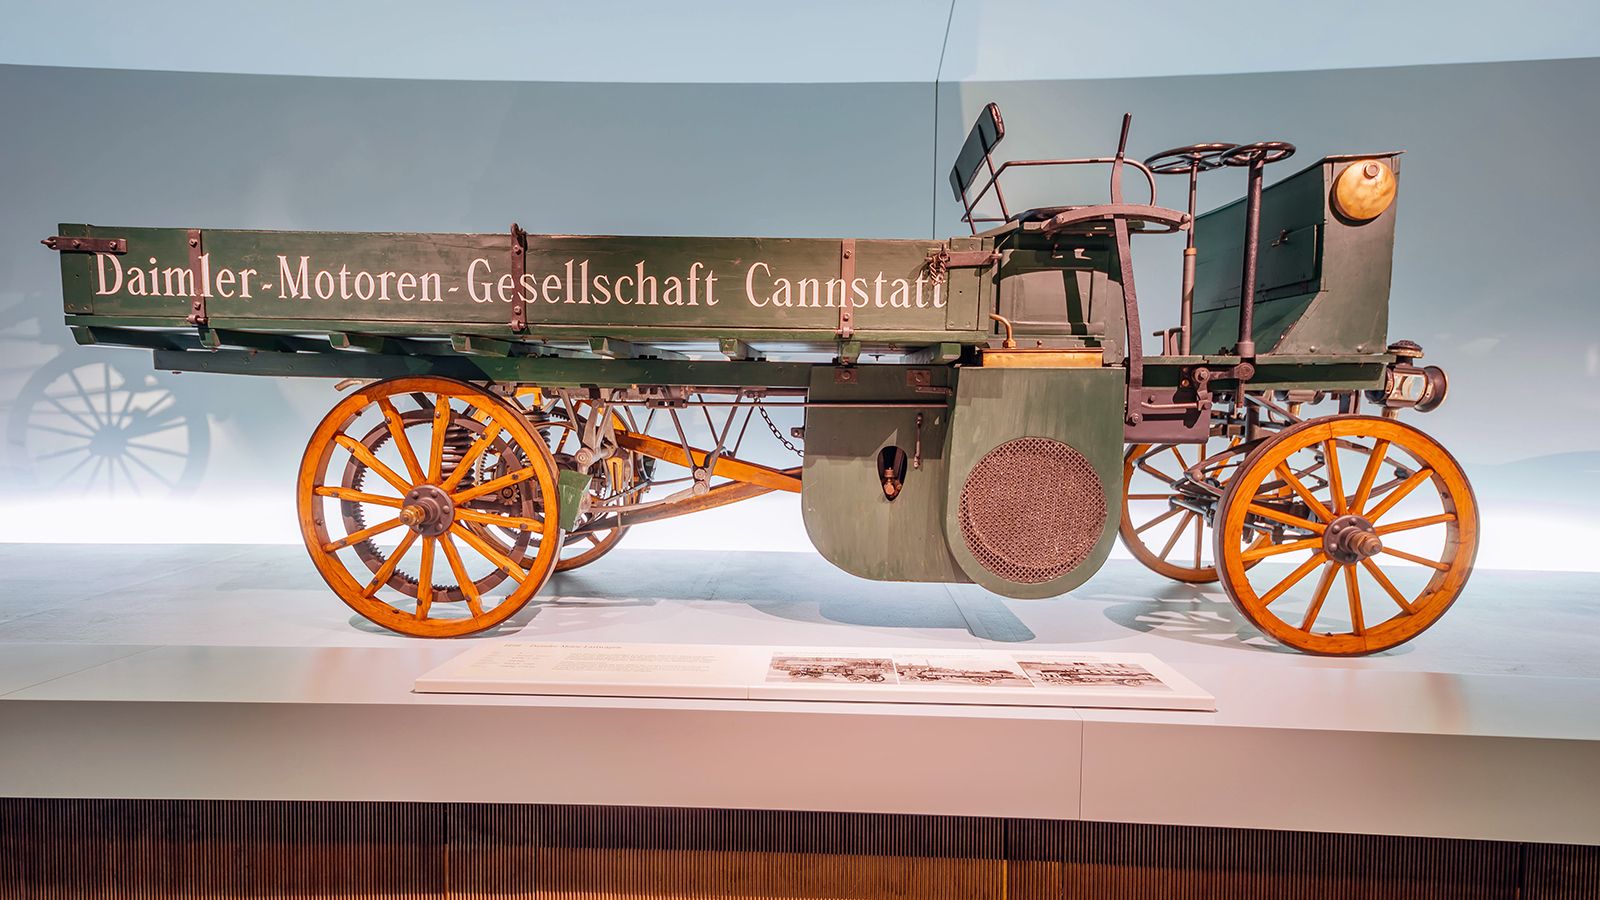 Το Daimler Motor-Lastwagen του 1898 κοσμεί με την παρουσία του το μουσείο της Mercedes-Benz και αποτελεί το παλαιότερο φορτηγό του κόσμου που διασώζεται μέχρι σήμερα.